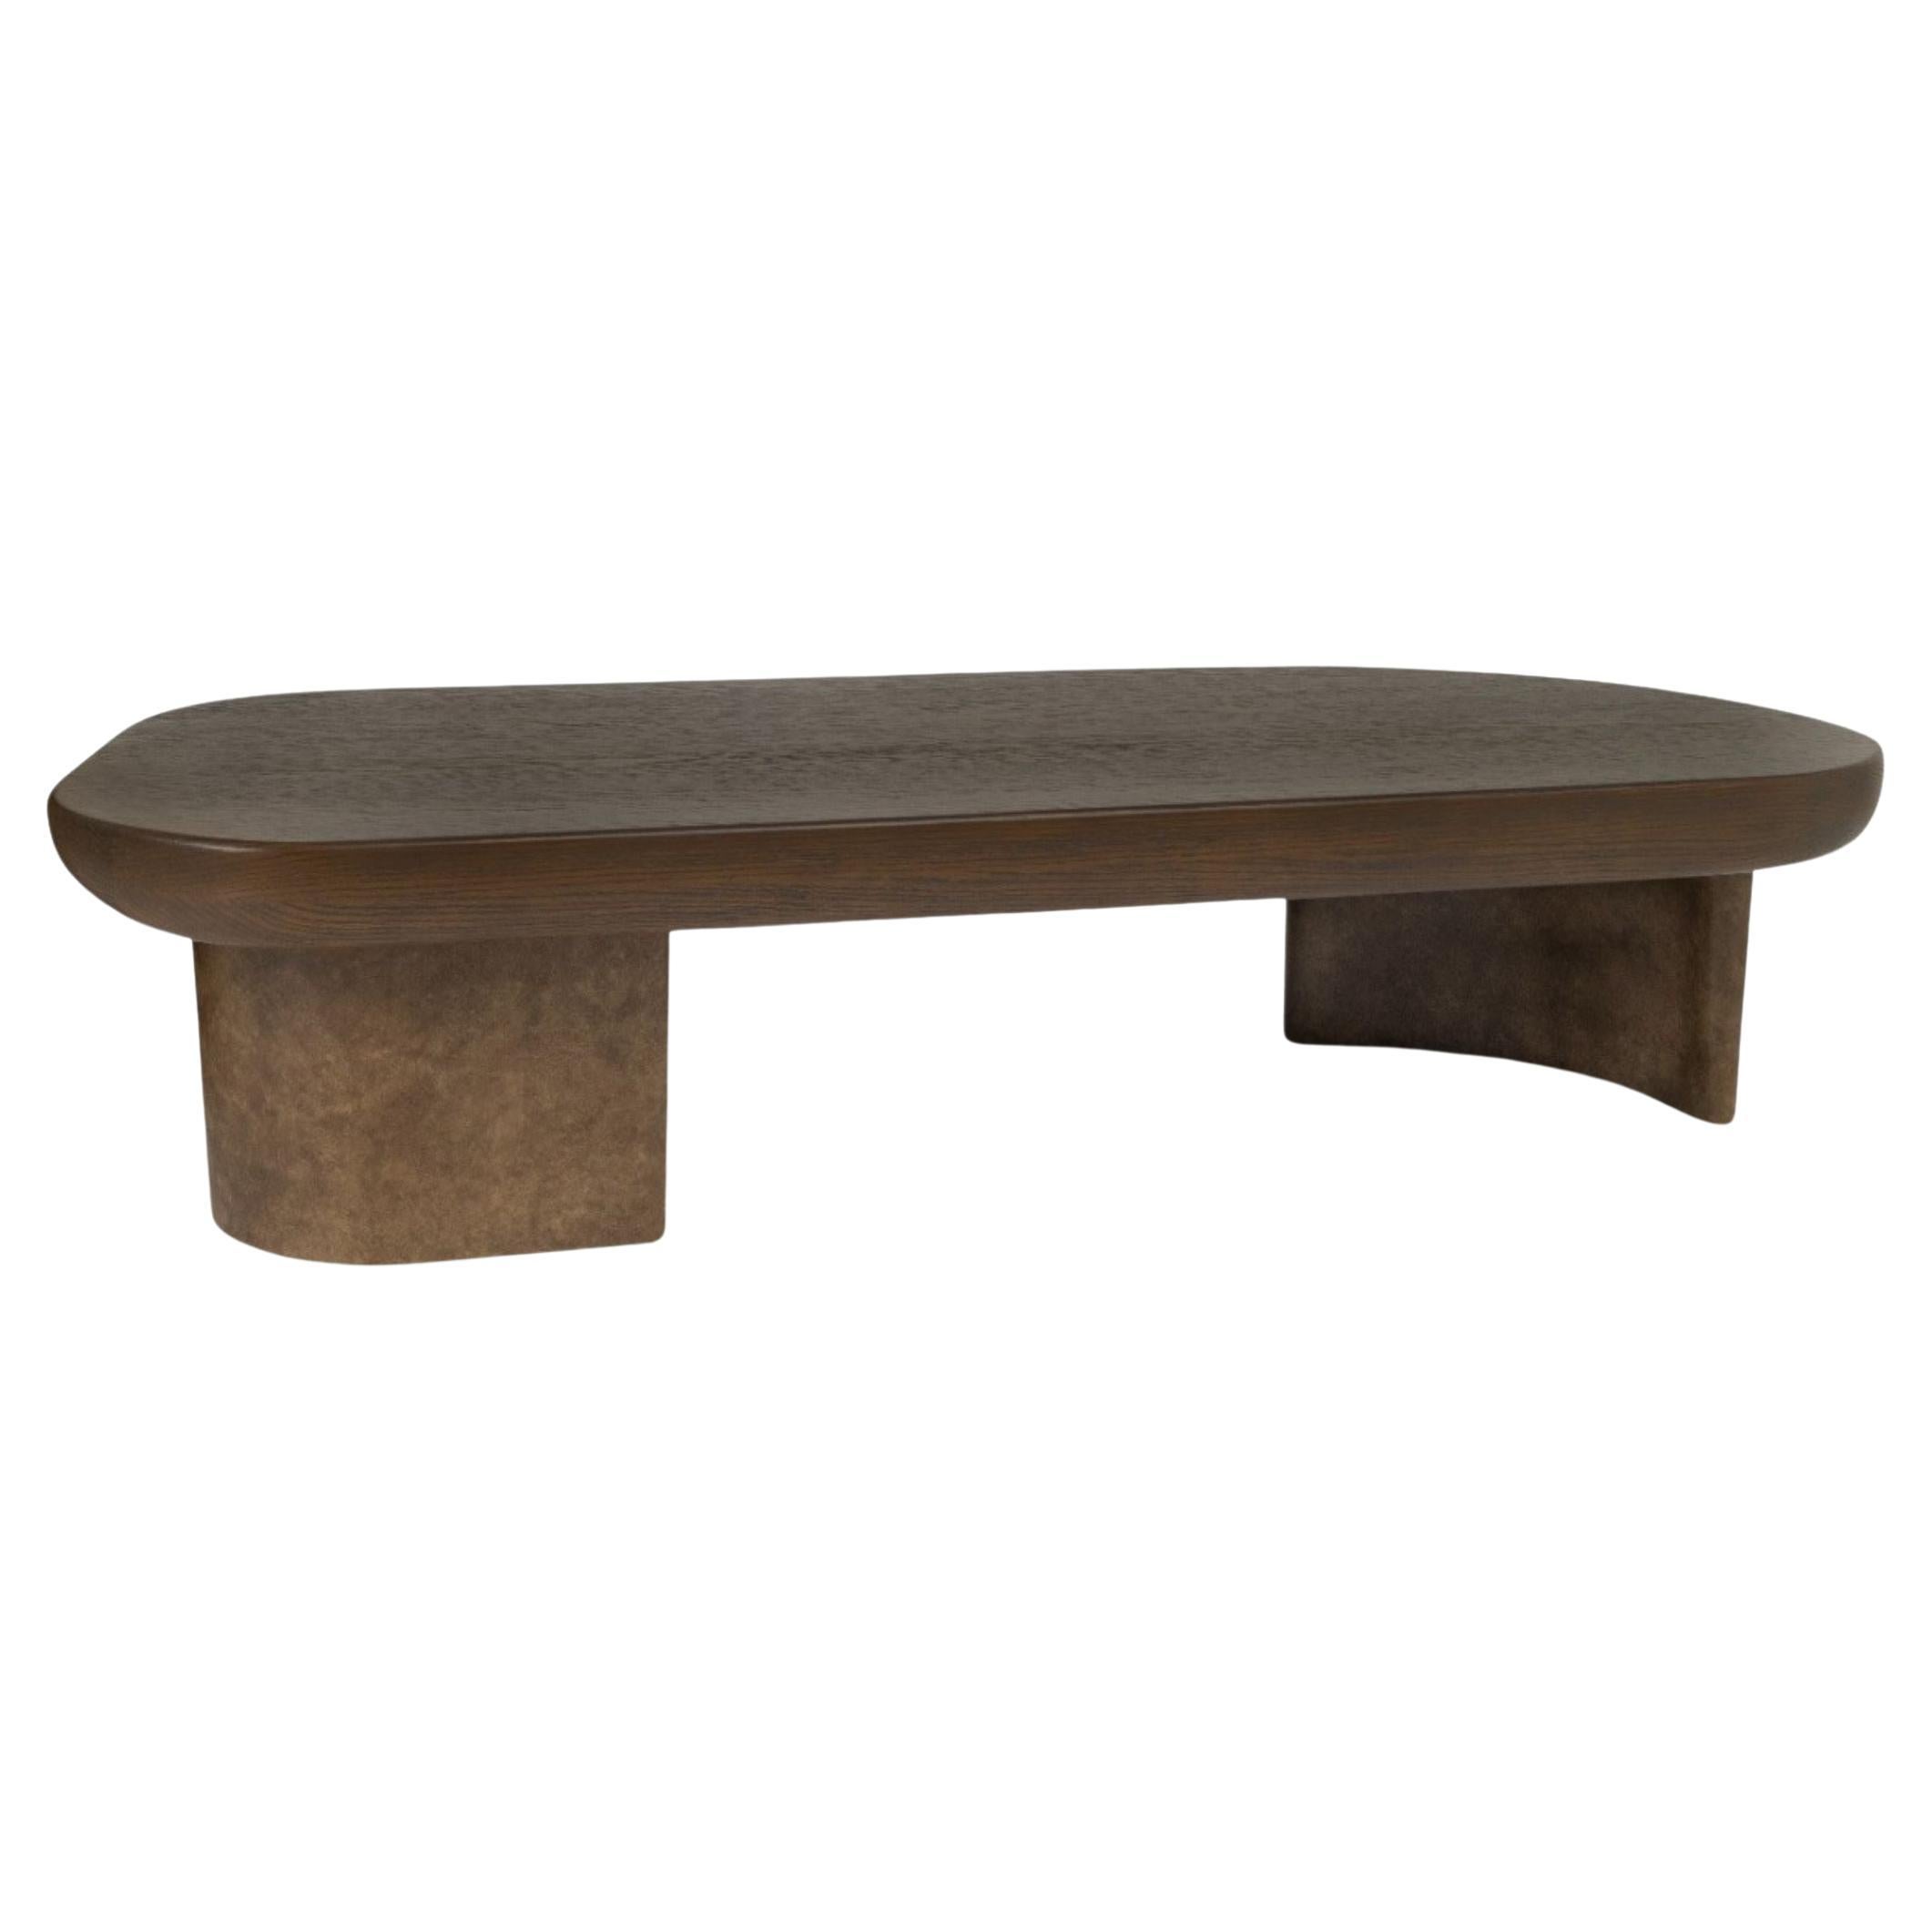  Table basse, plateau en chêne, base en bois laqué texturé faite à la main, océan